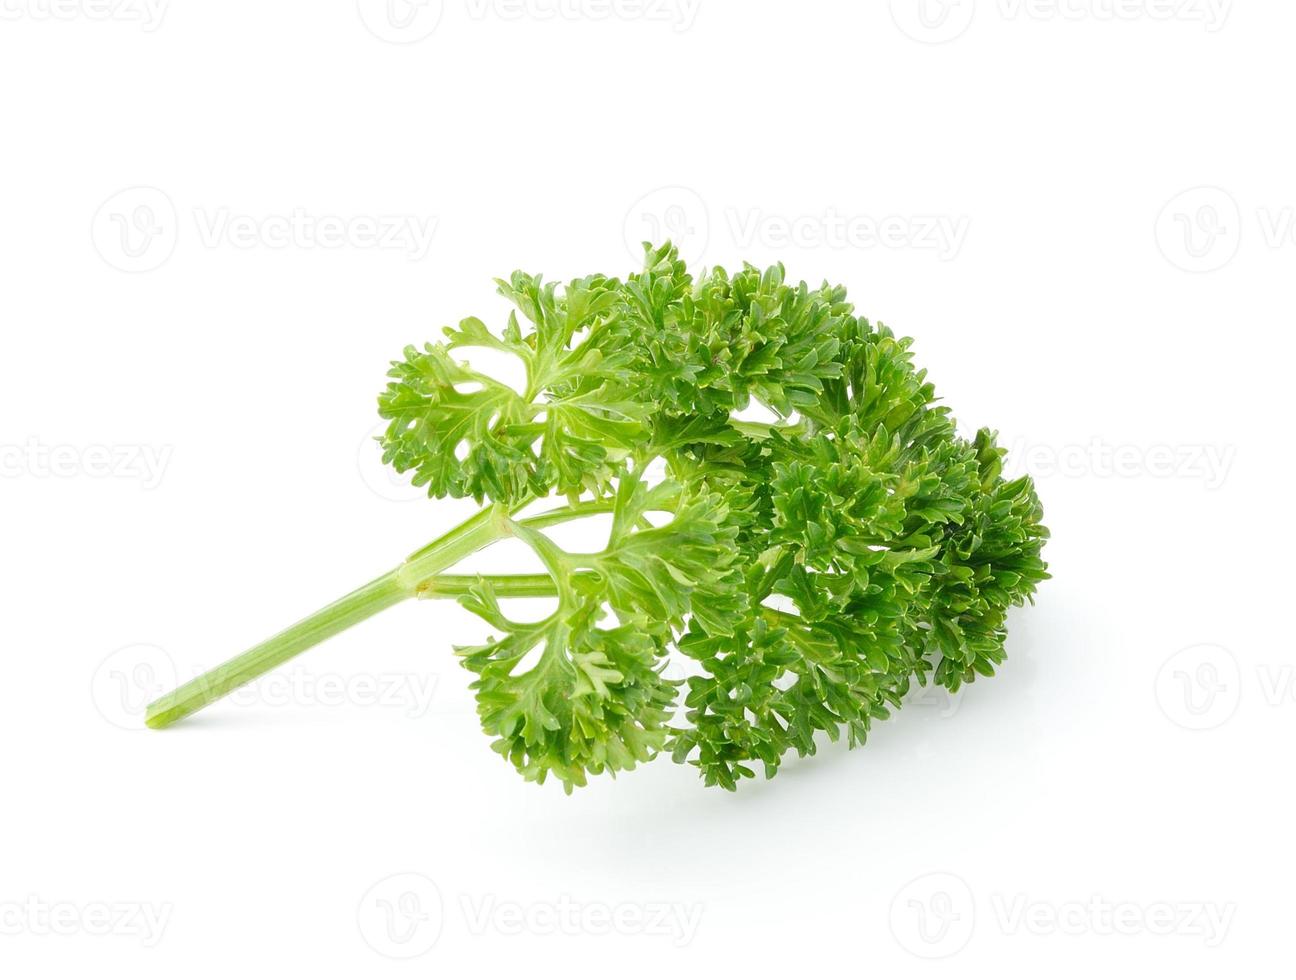 parsley isolated on white background photo